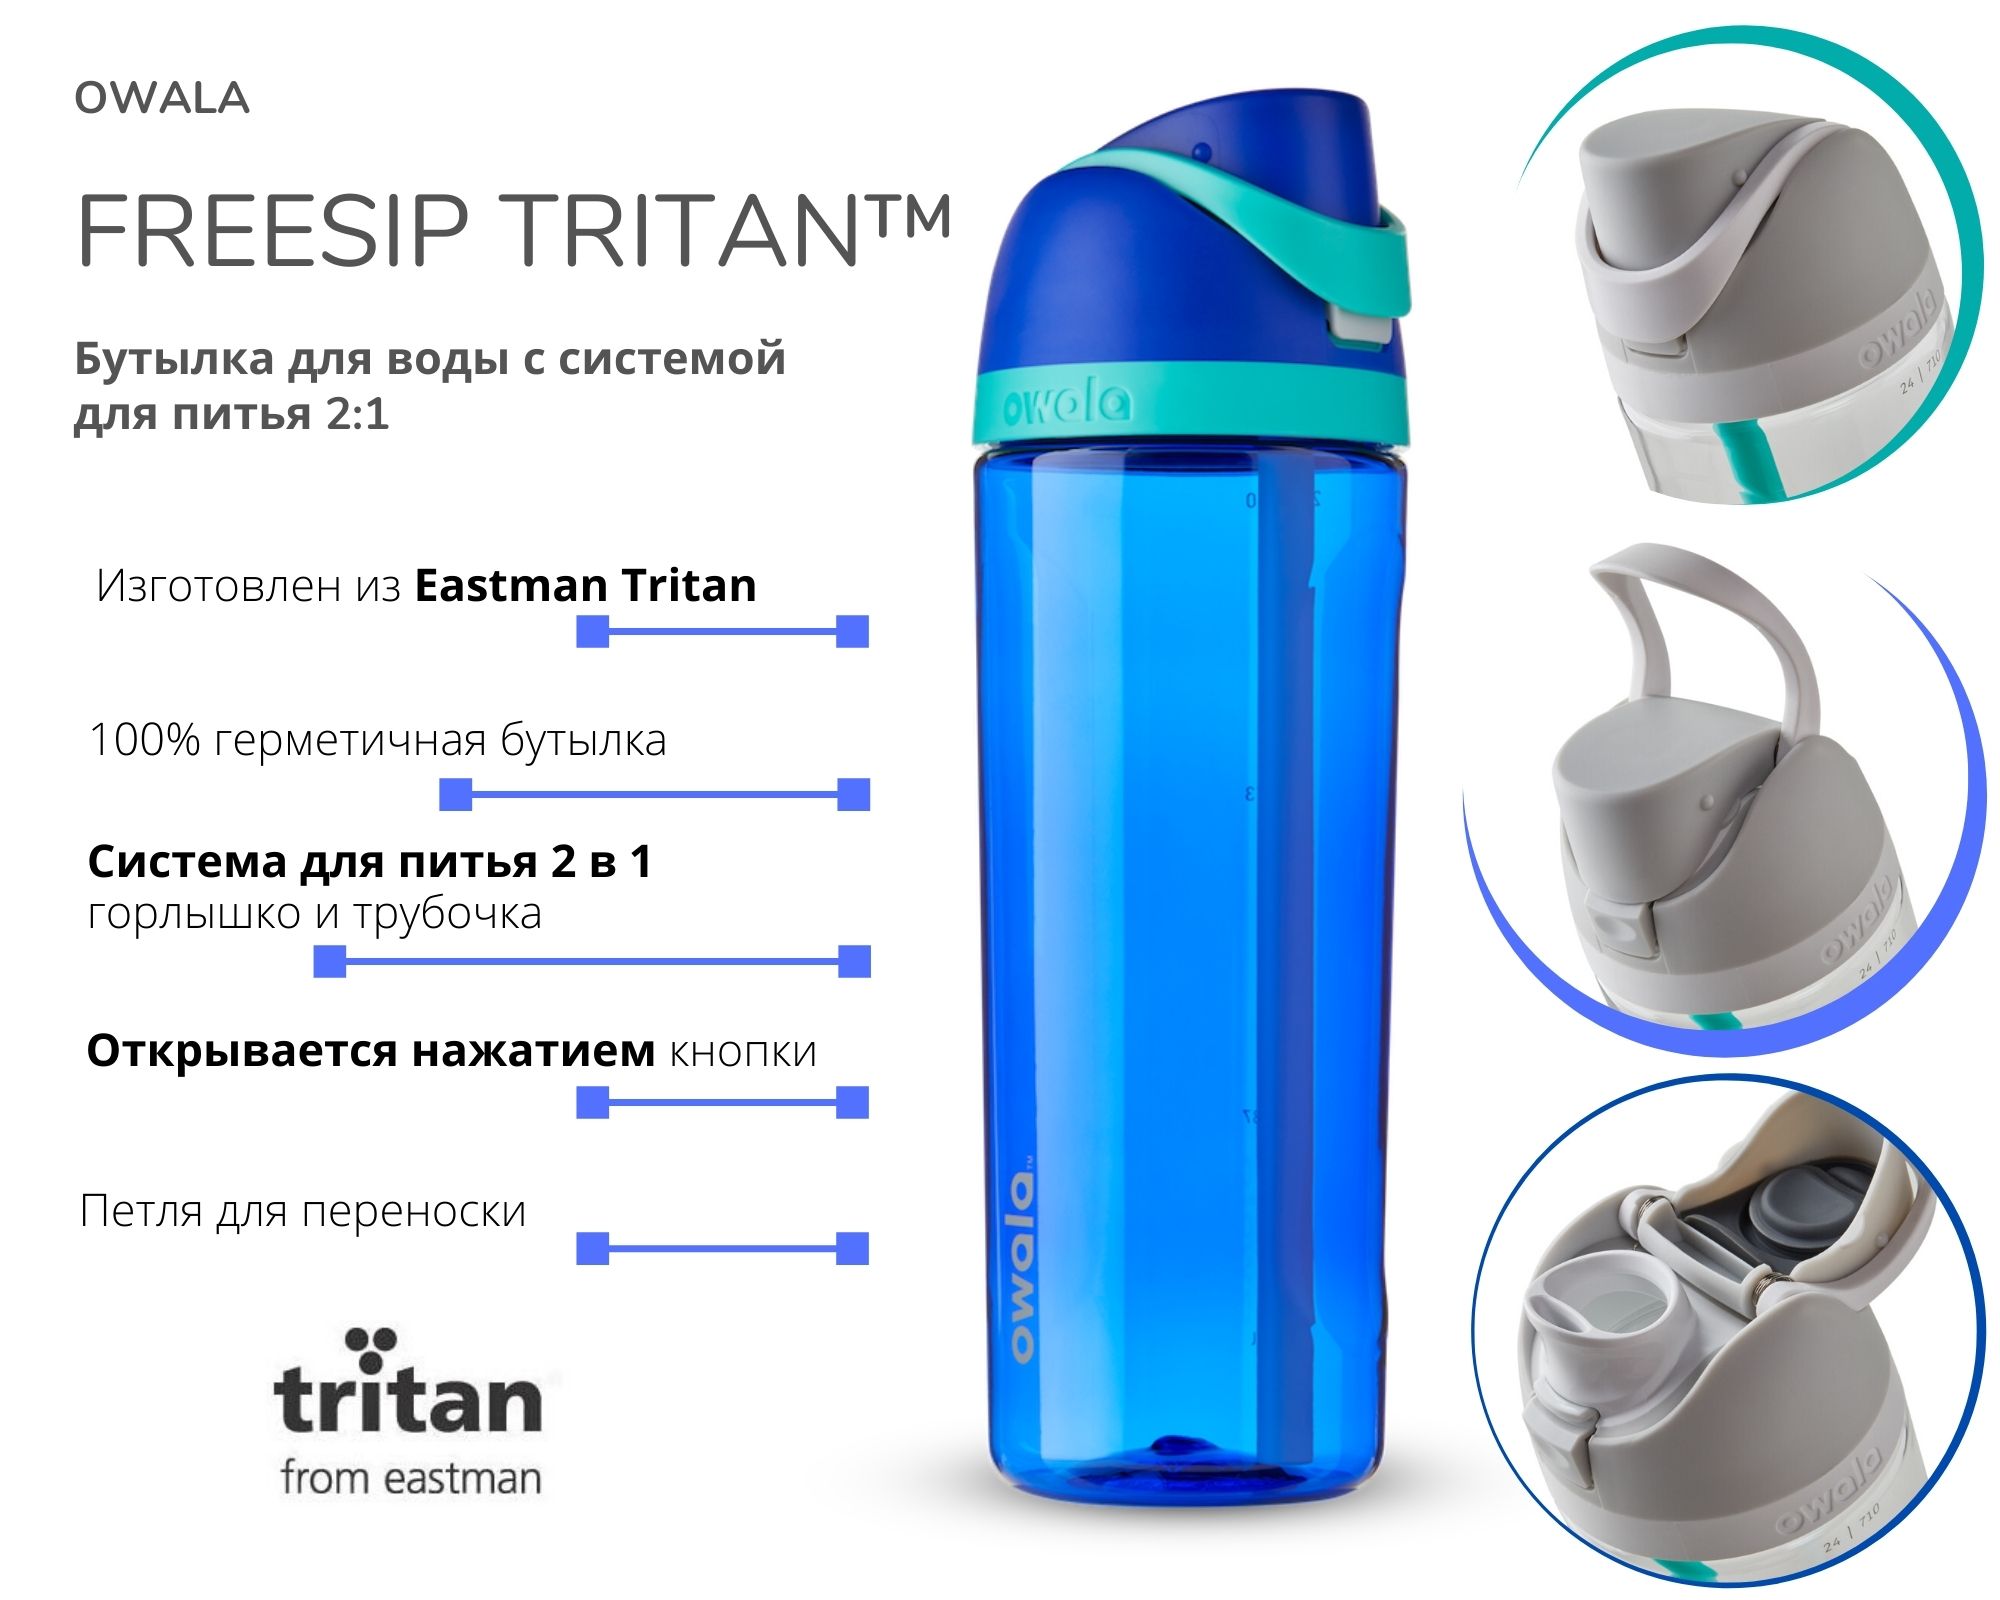 Owala FreeSip Tritan с ультра современной системой для питья 2 в 1